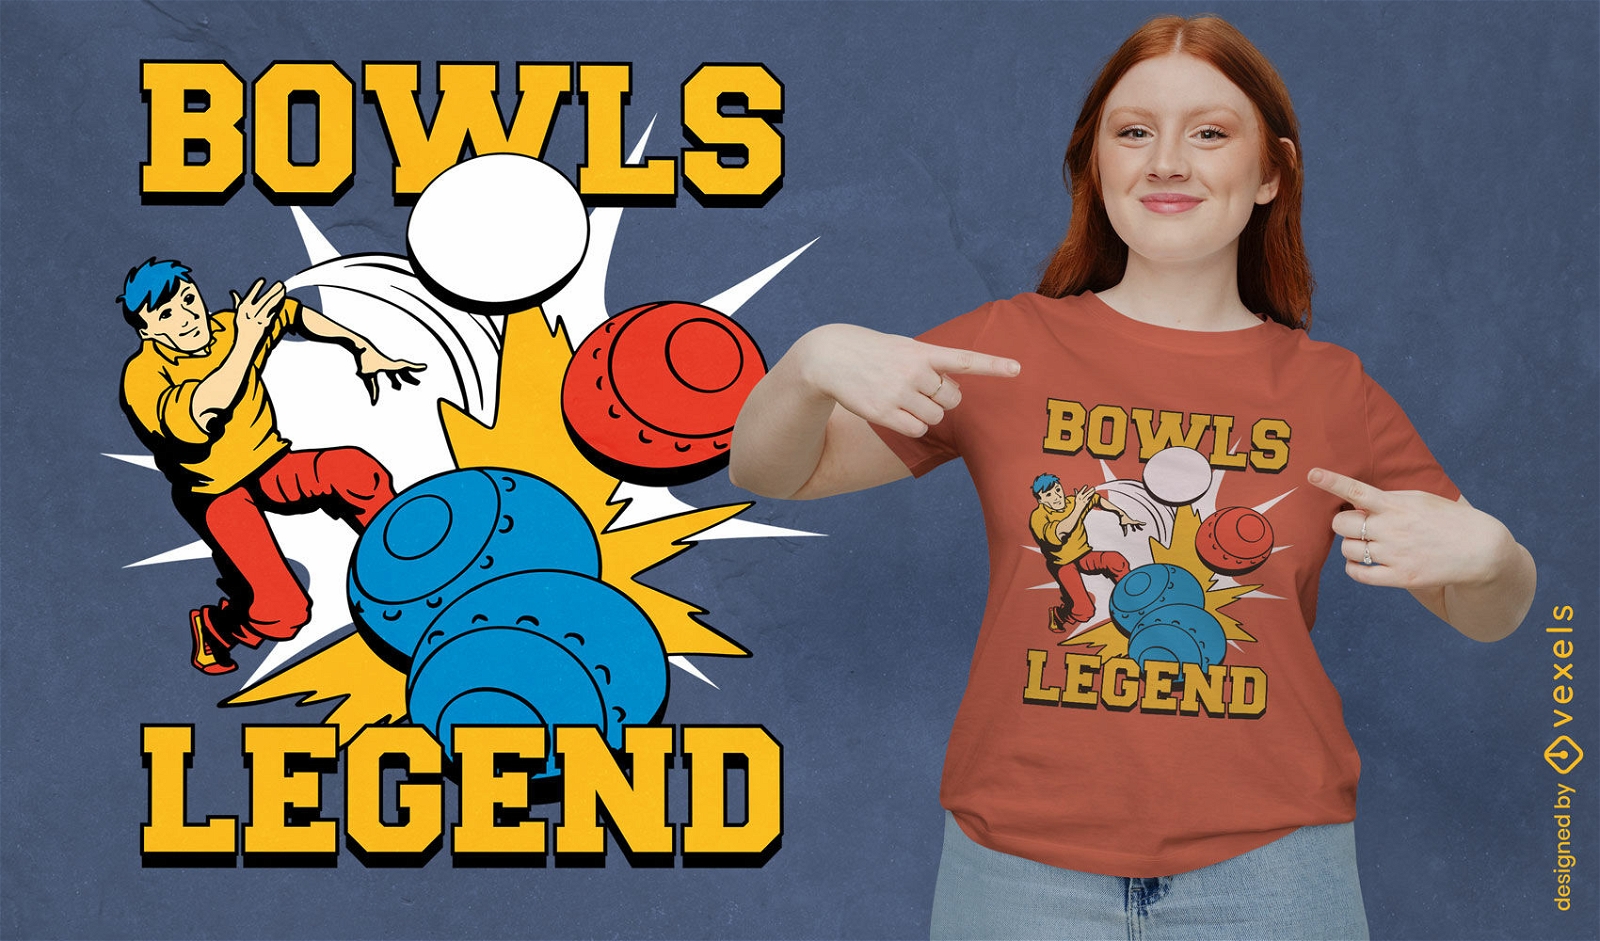 Lawnbowls legend t-shirt design